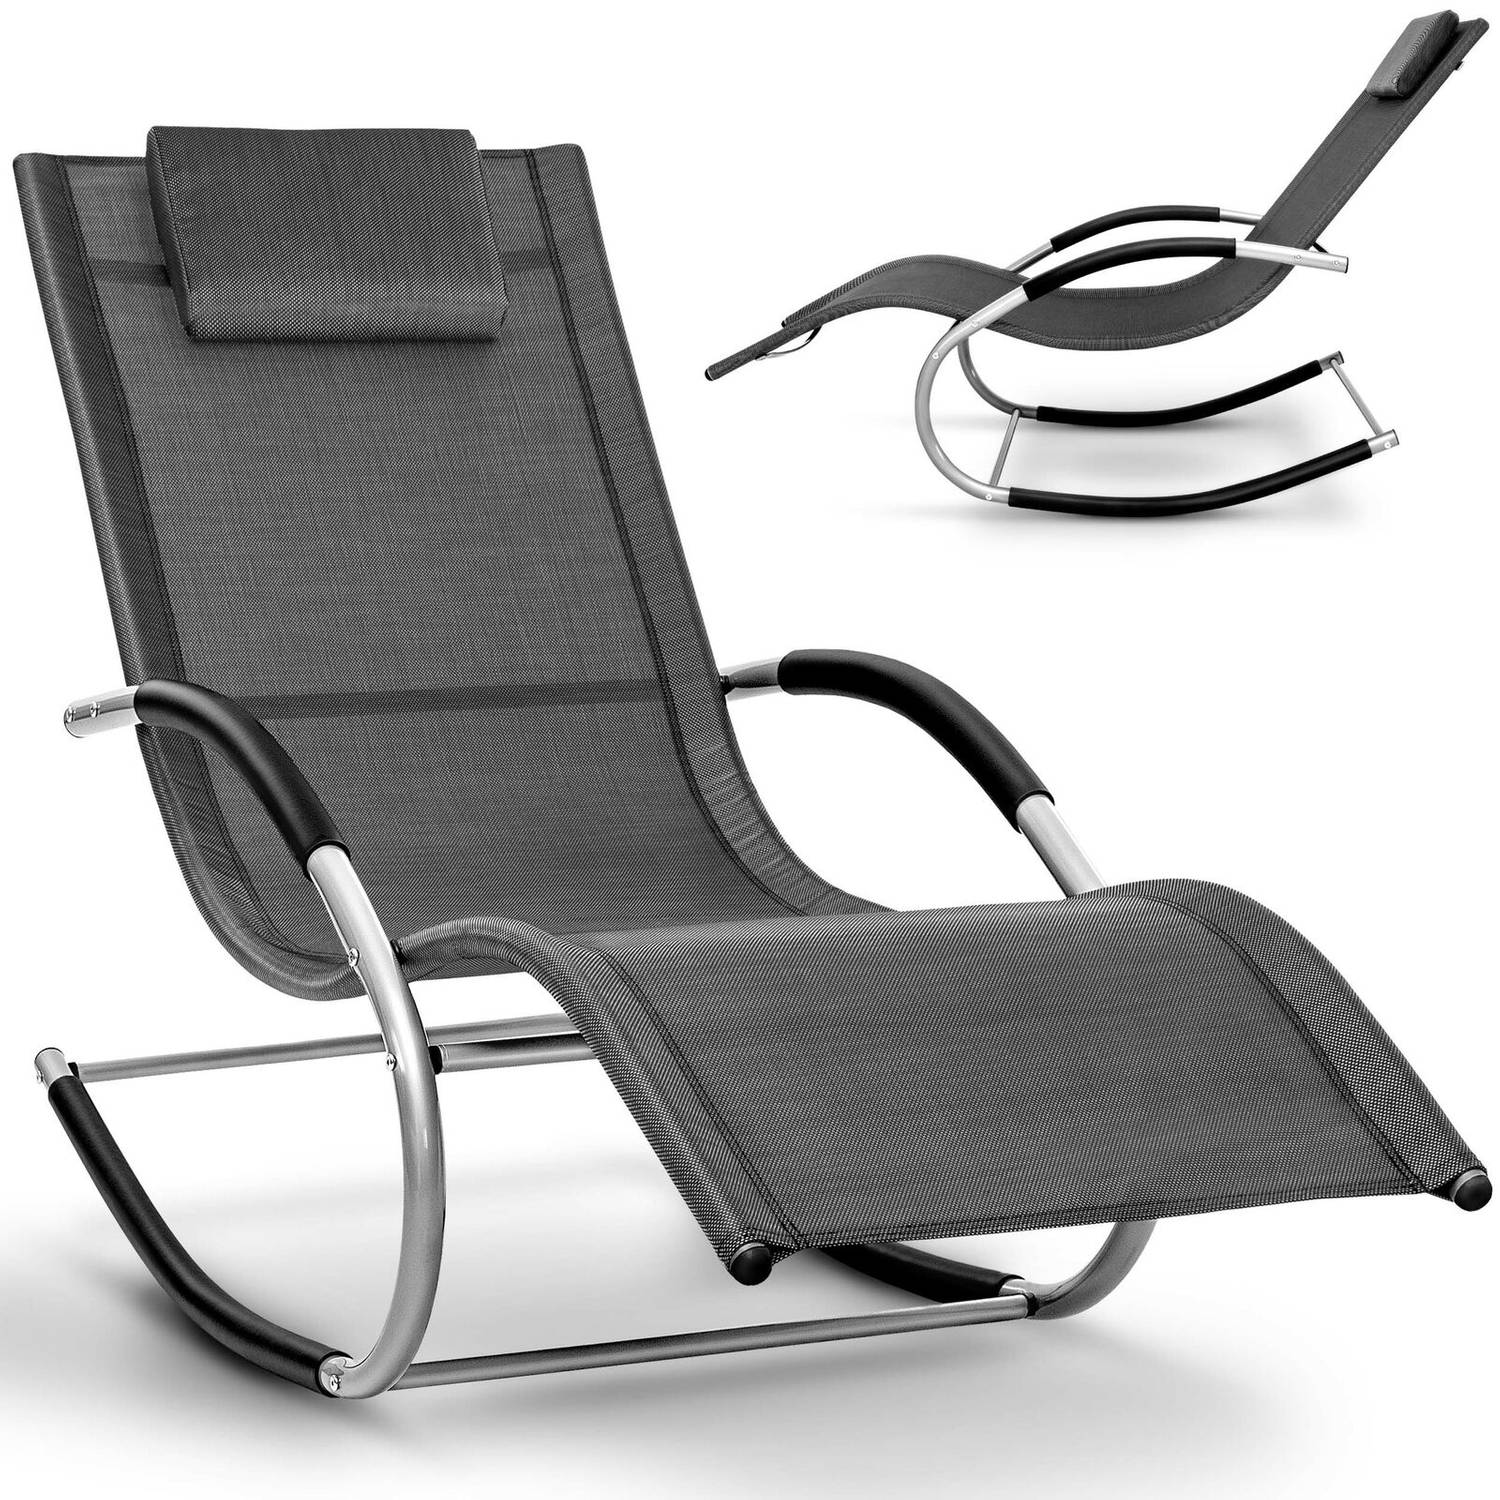 droog Bespreken steekpenningen Tillvex- schommelstoel antraciet-tuin ligstoel- relax ligstoel- ligstoel  schommel- ligstoel camping | Blokker